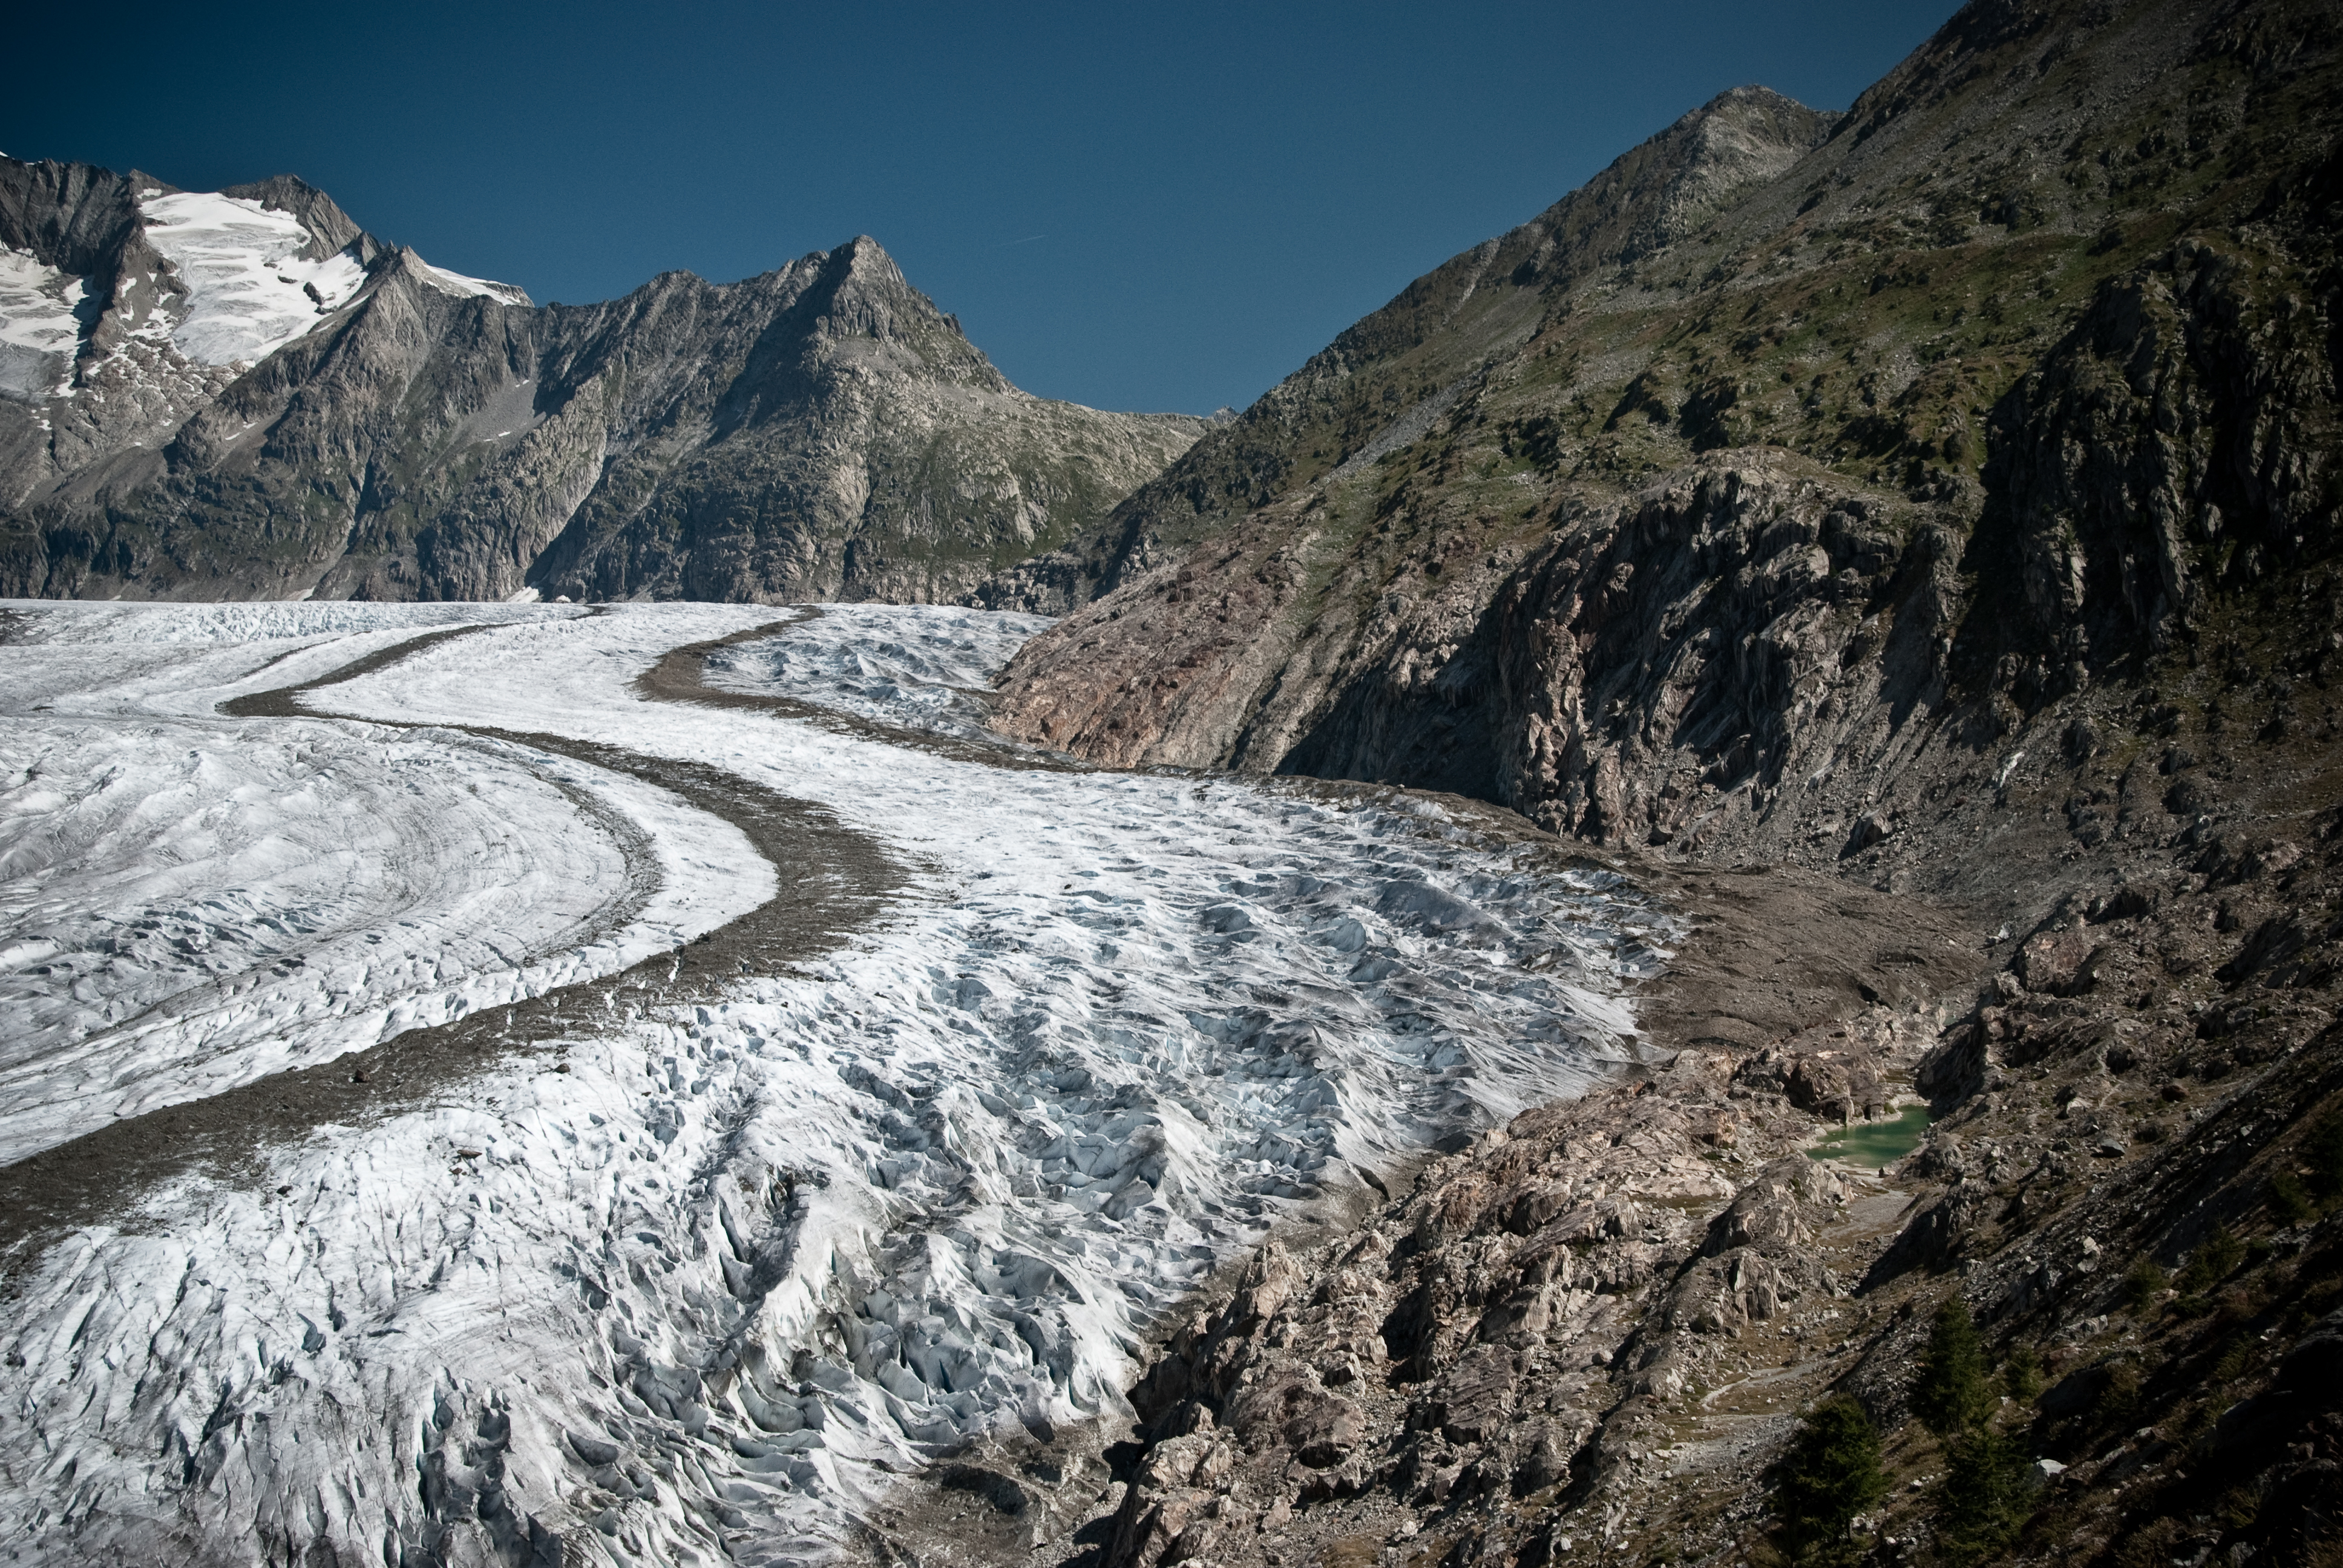 8- The Aletsch Glacier